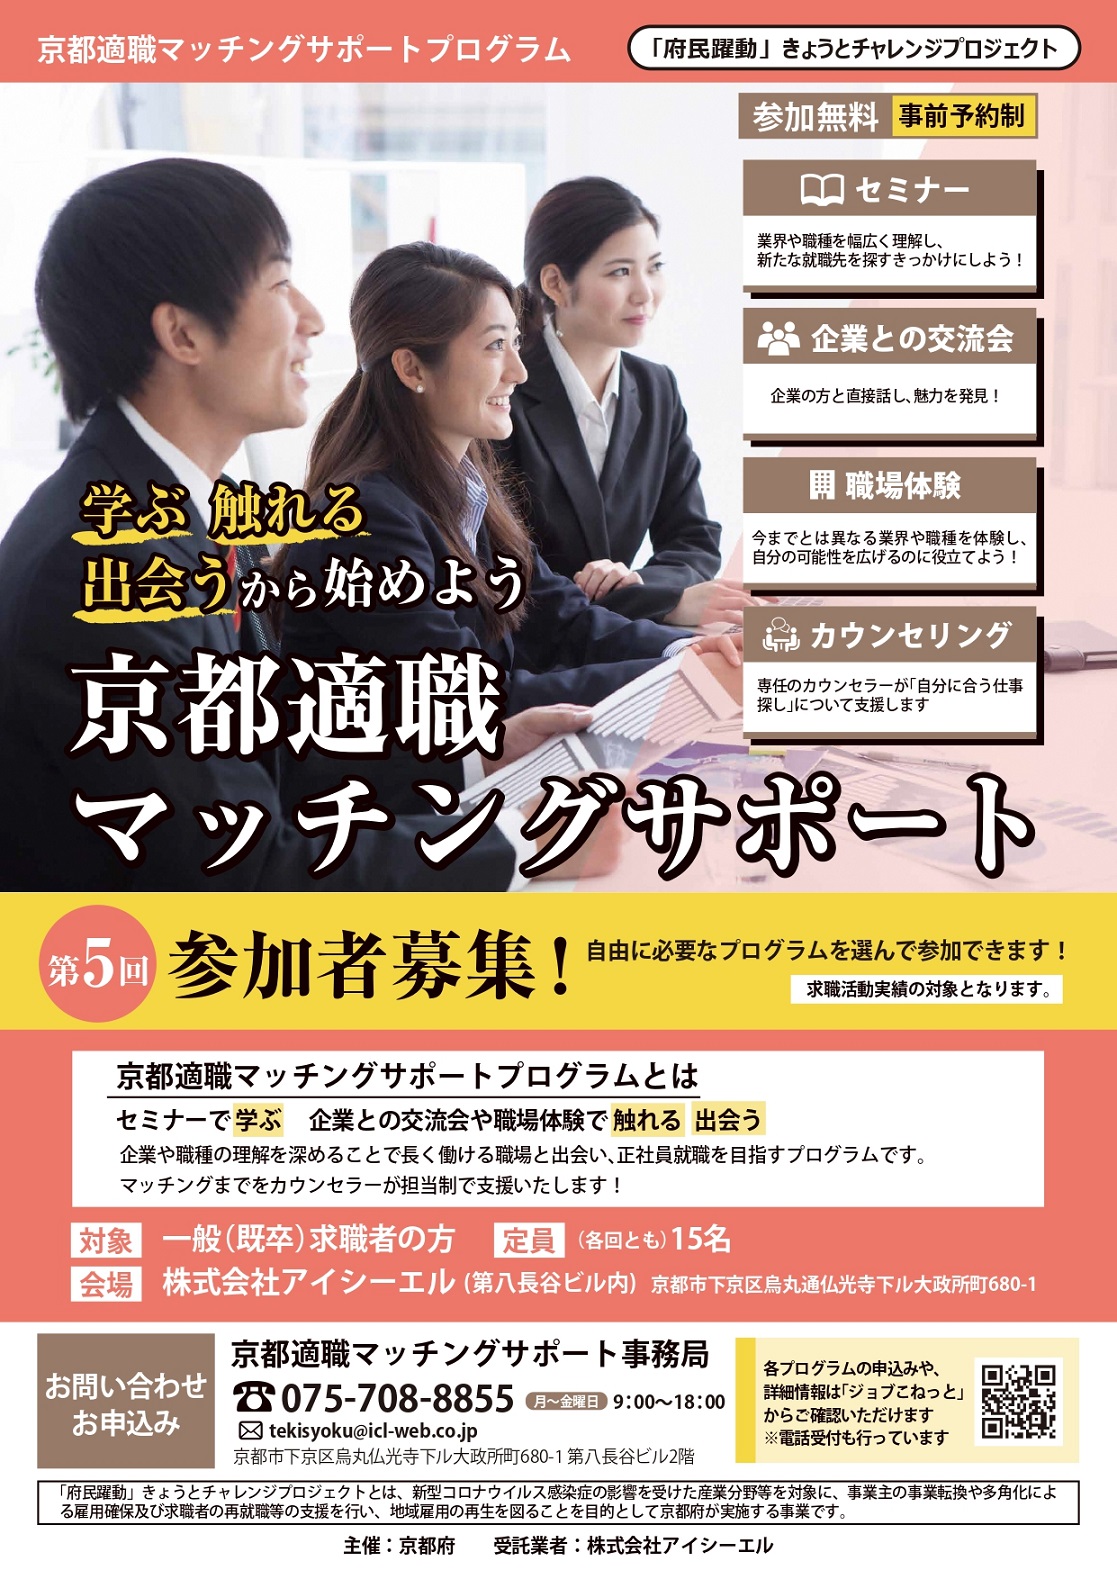 第５回「京都適職マッチングサポートプログラム」参加者募集